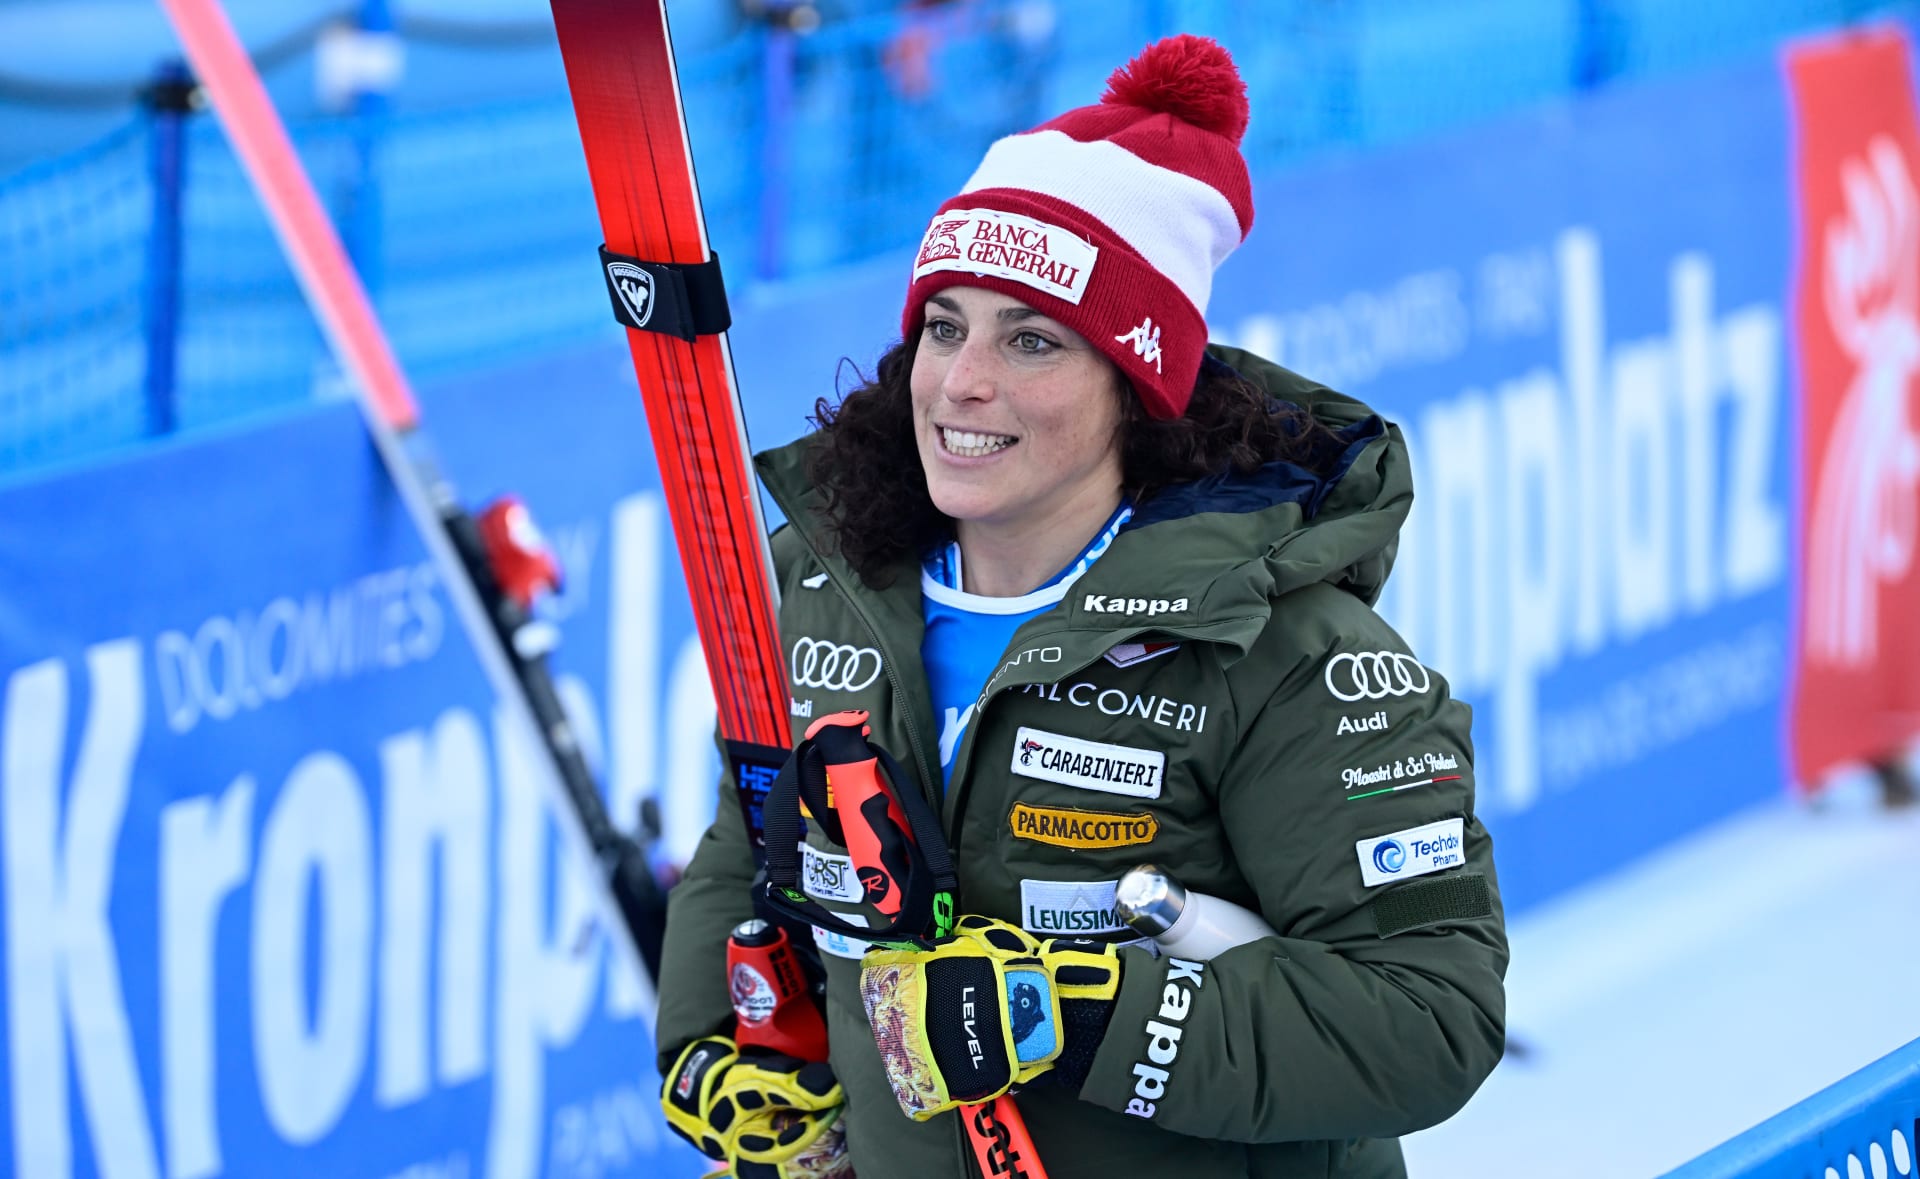 SUPER-G | Federica Brignoneová vlastní olympijskou medaili z obřího slalomu, ale momentálně má velkou formu v rámci jeho většího a rychlejšího bratříčka. Vede pořadí disciplíny.